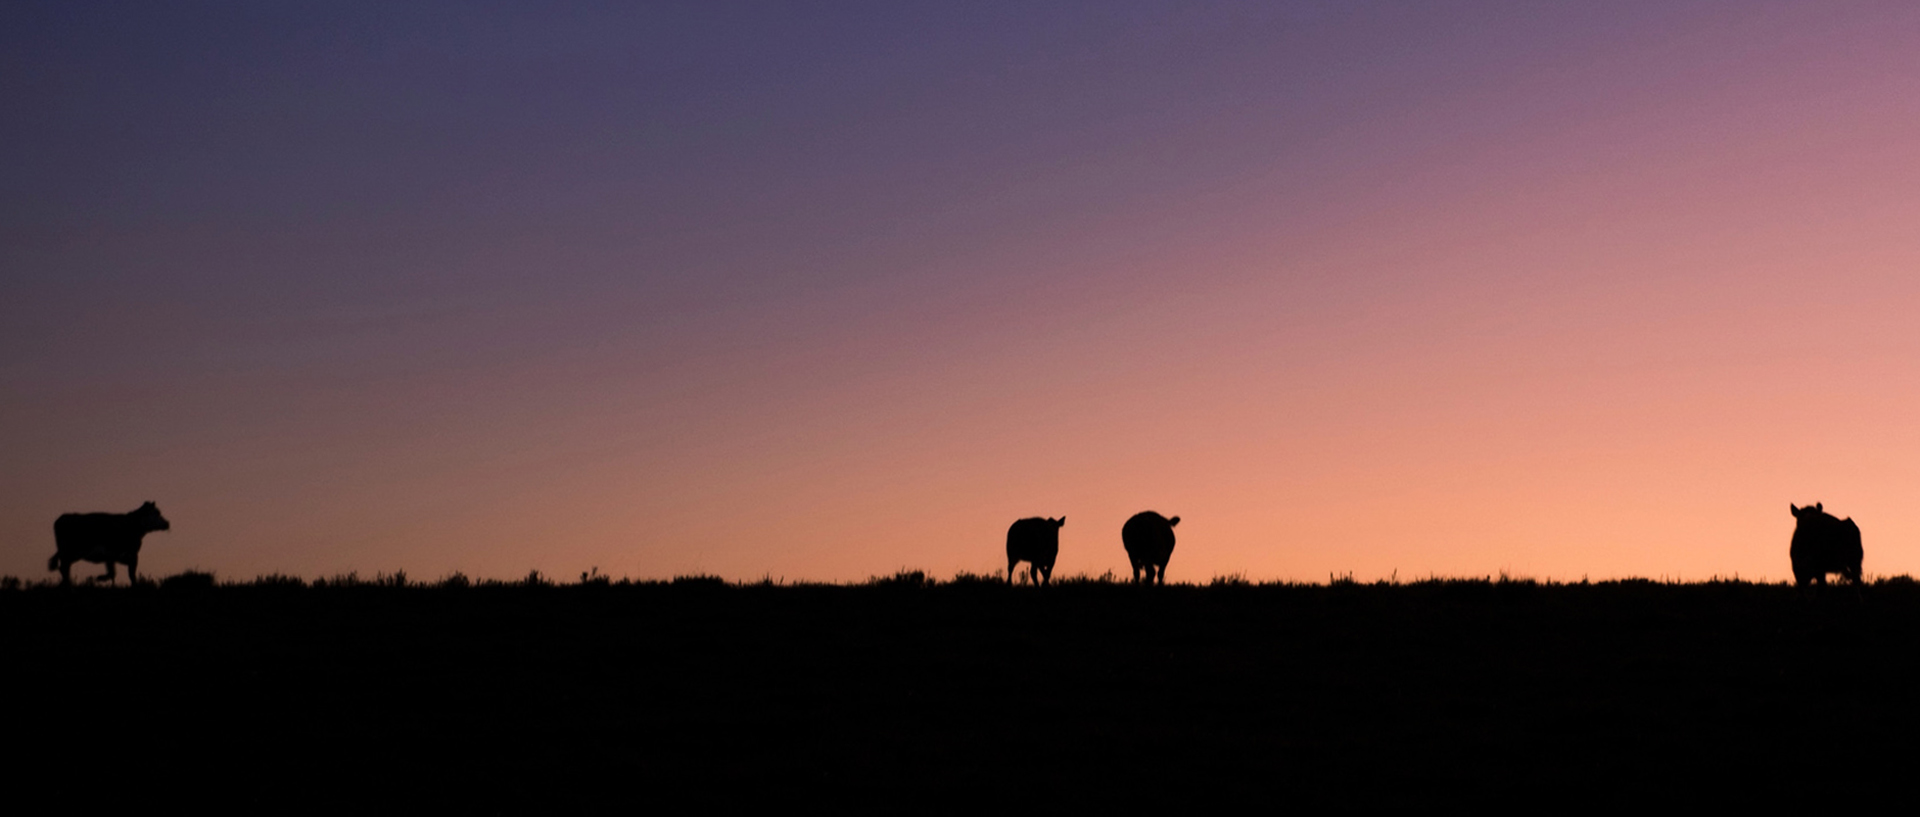 Im Hintergrund geht die Sonne unter, während auf dem Deich Tiere grasen., © Catalenca / photocase.de